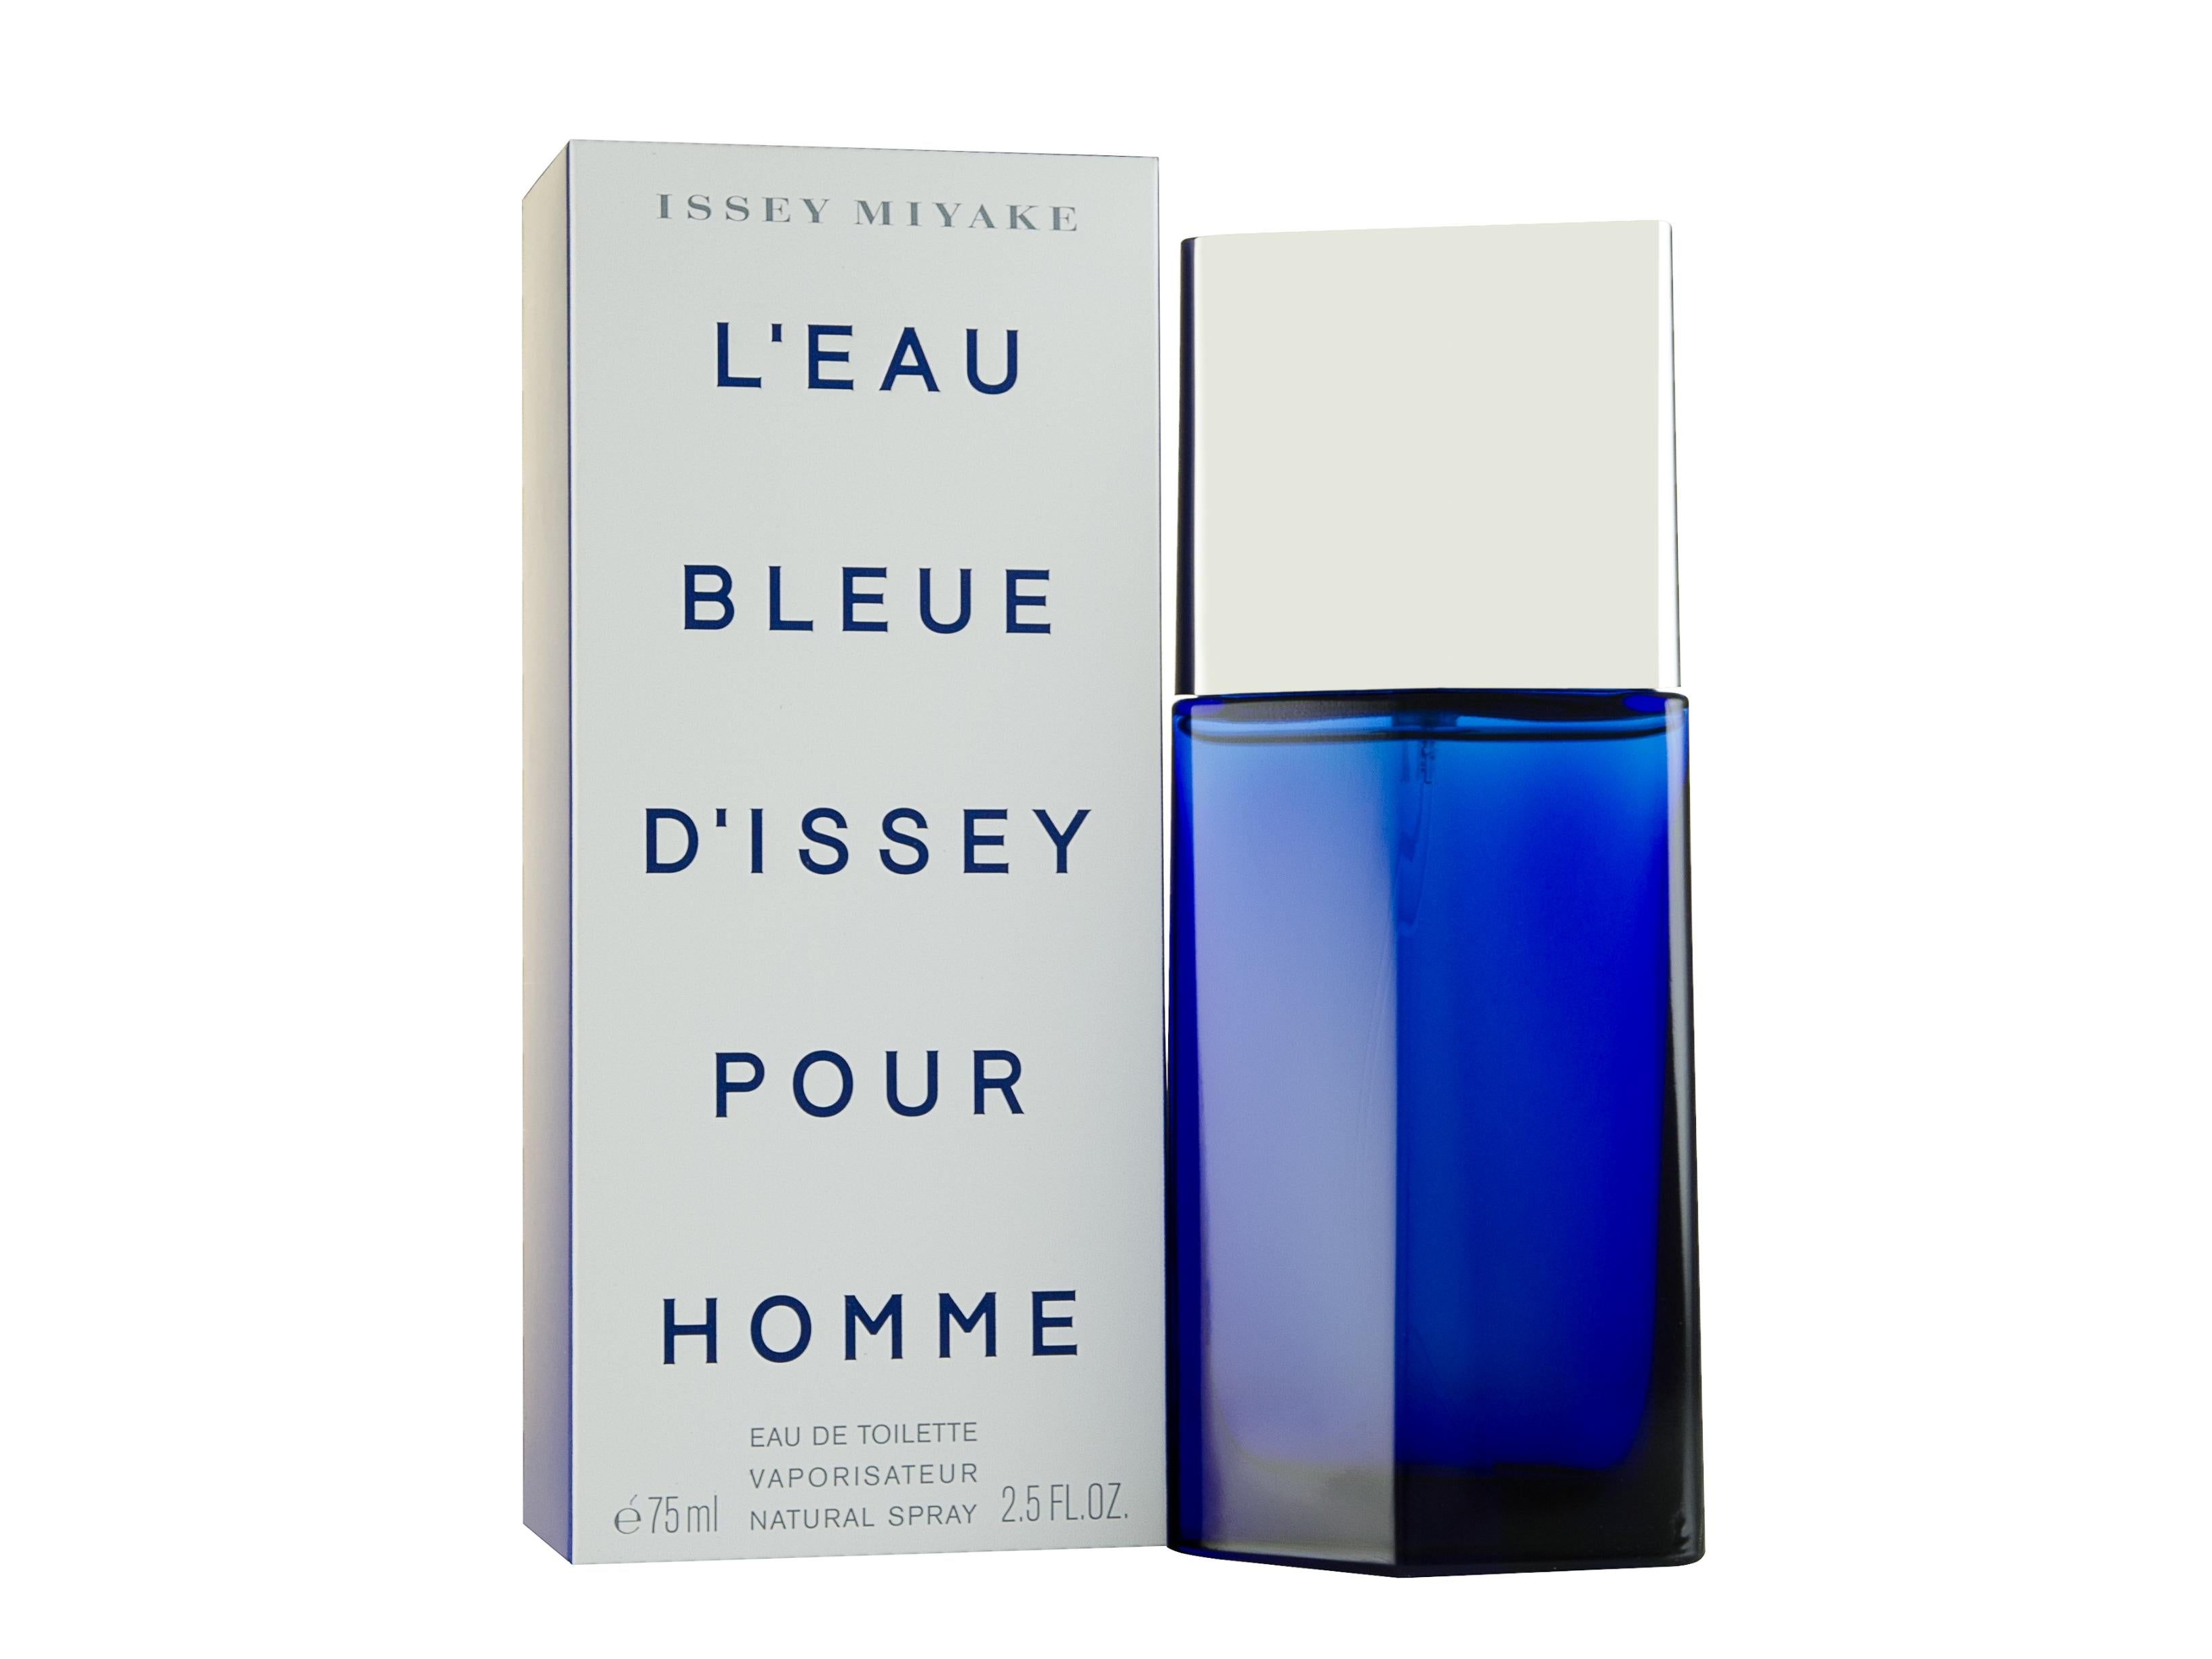 View Issey Miyake LEau Bleue dIssey Pour Homme Eau de Toilette 75ml Sprej information